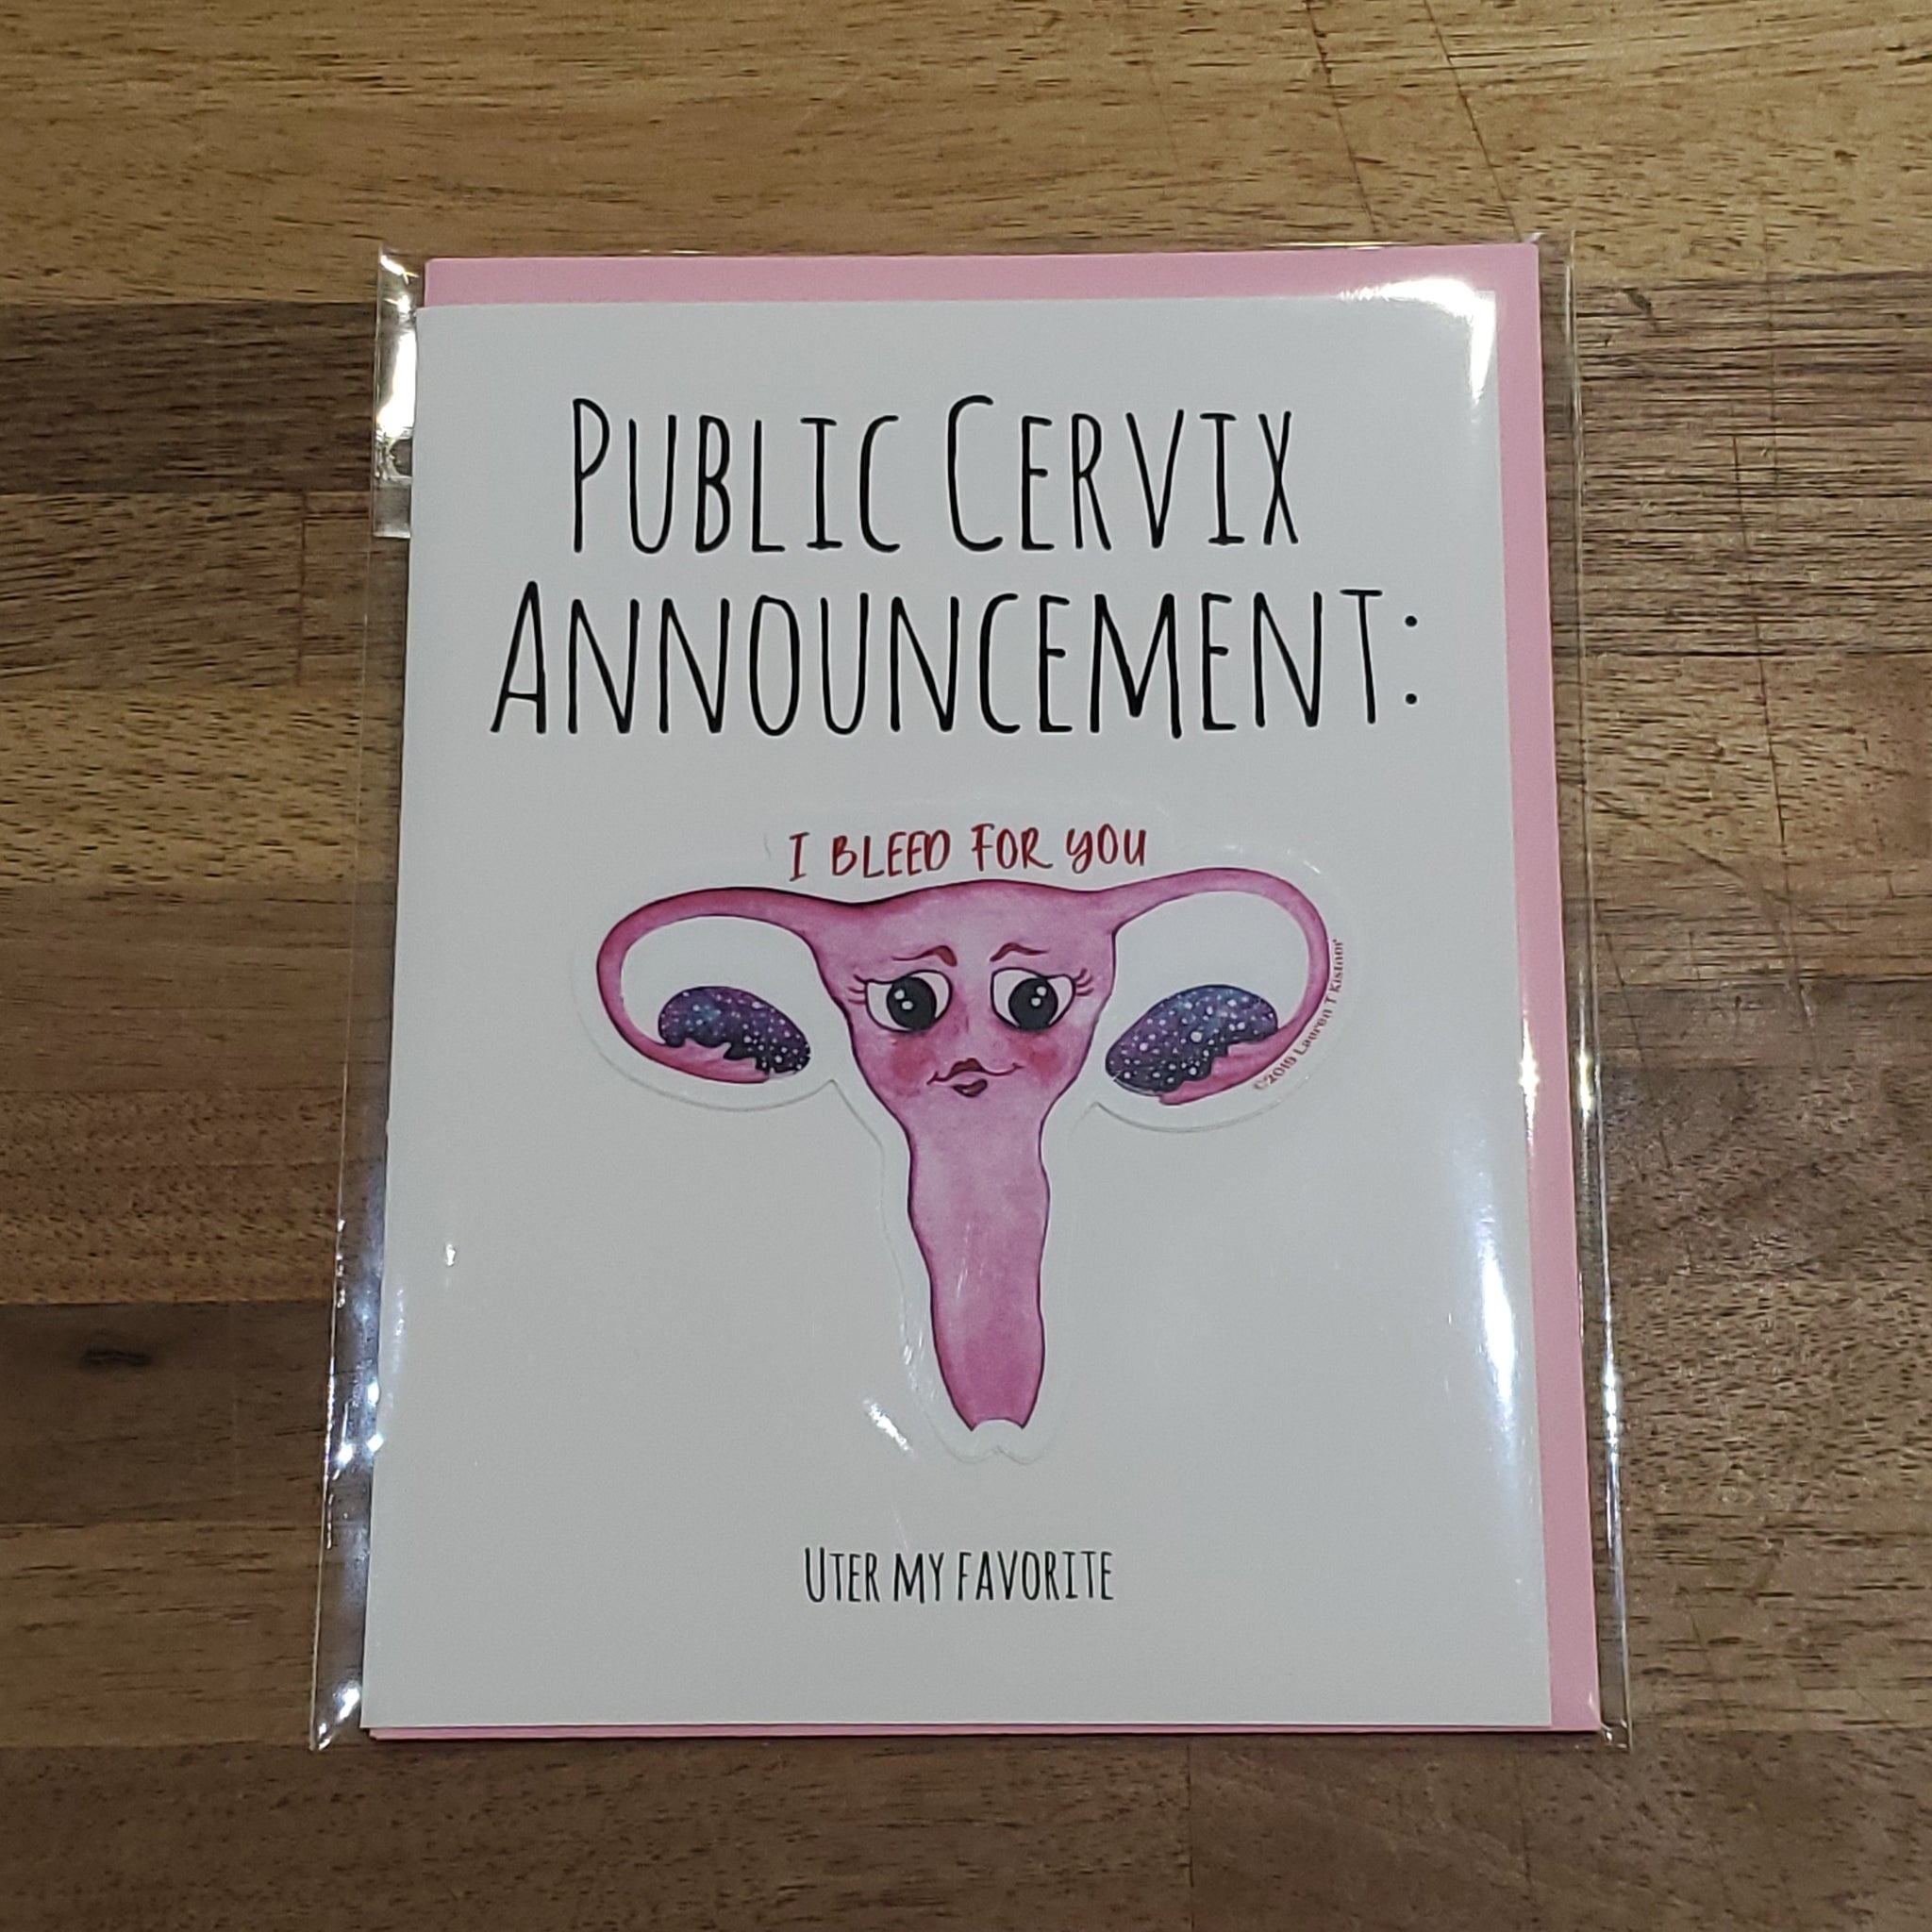 Lauren T Kistner Arts - Card + Sticker "Public Cervix Announcement"